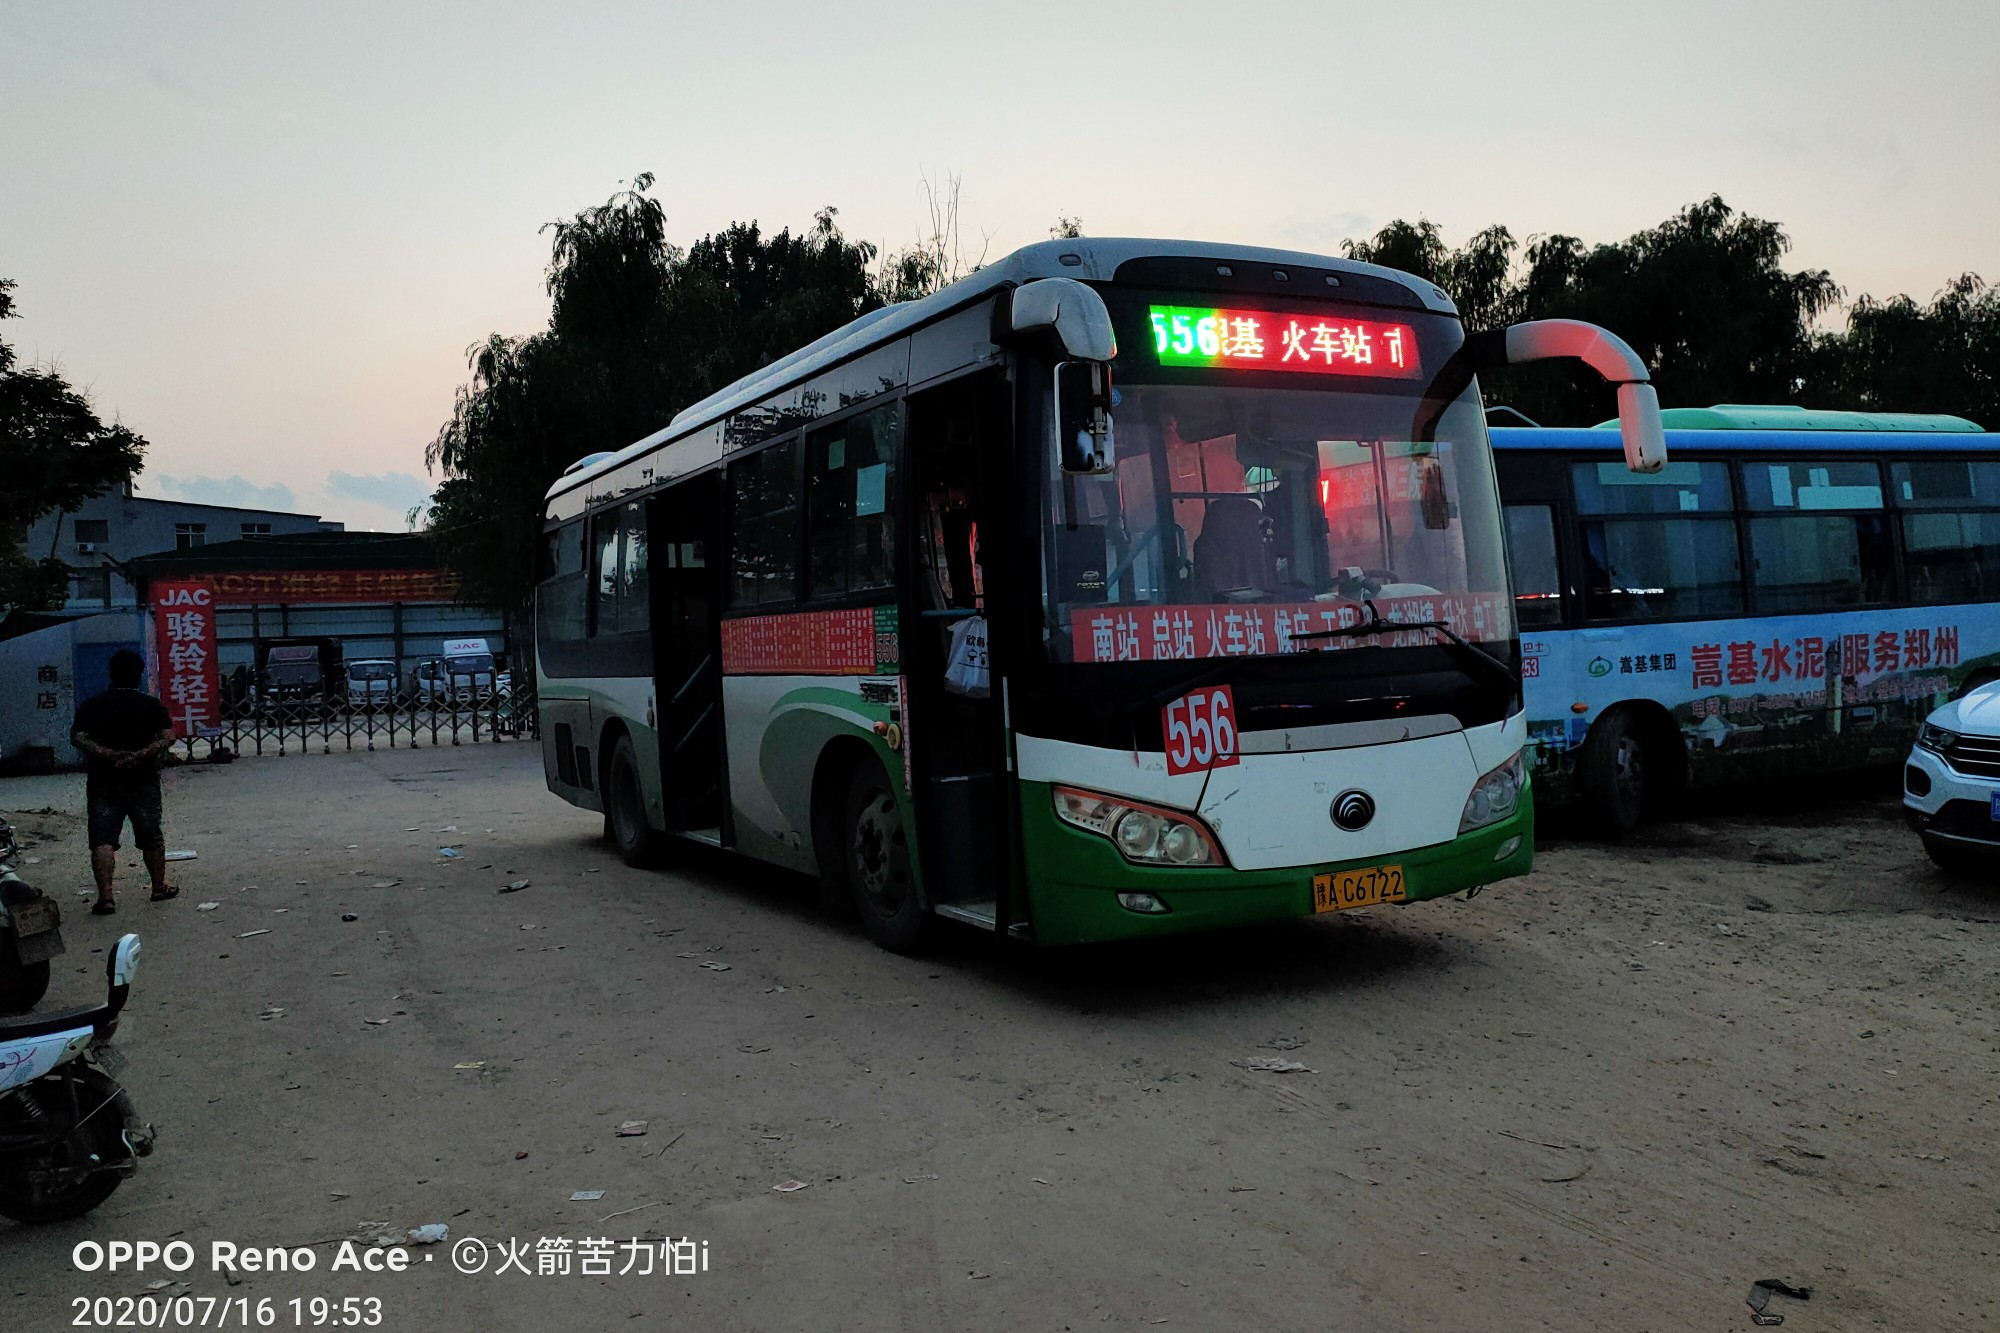 郑州556路(暂停营运)公交车路线